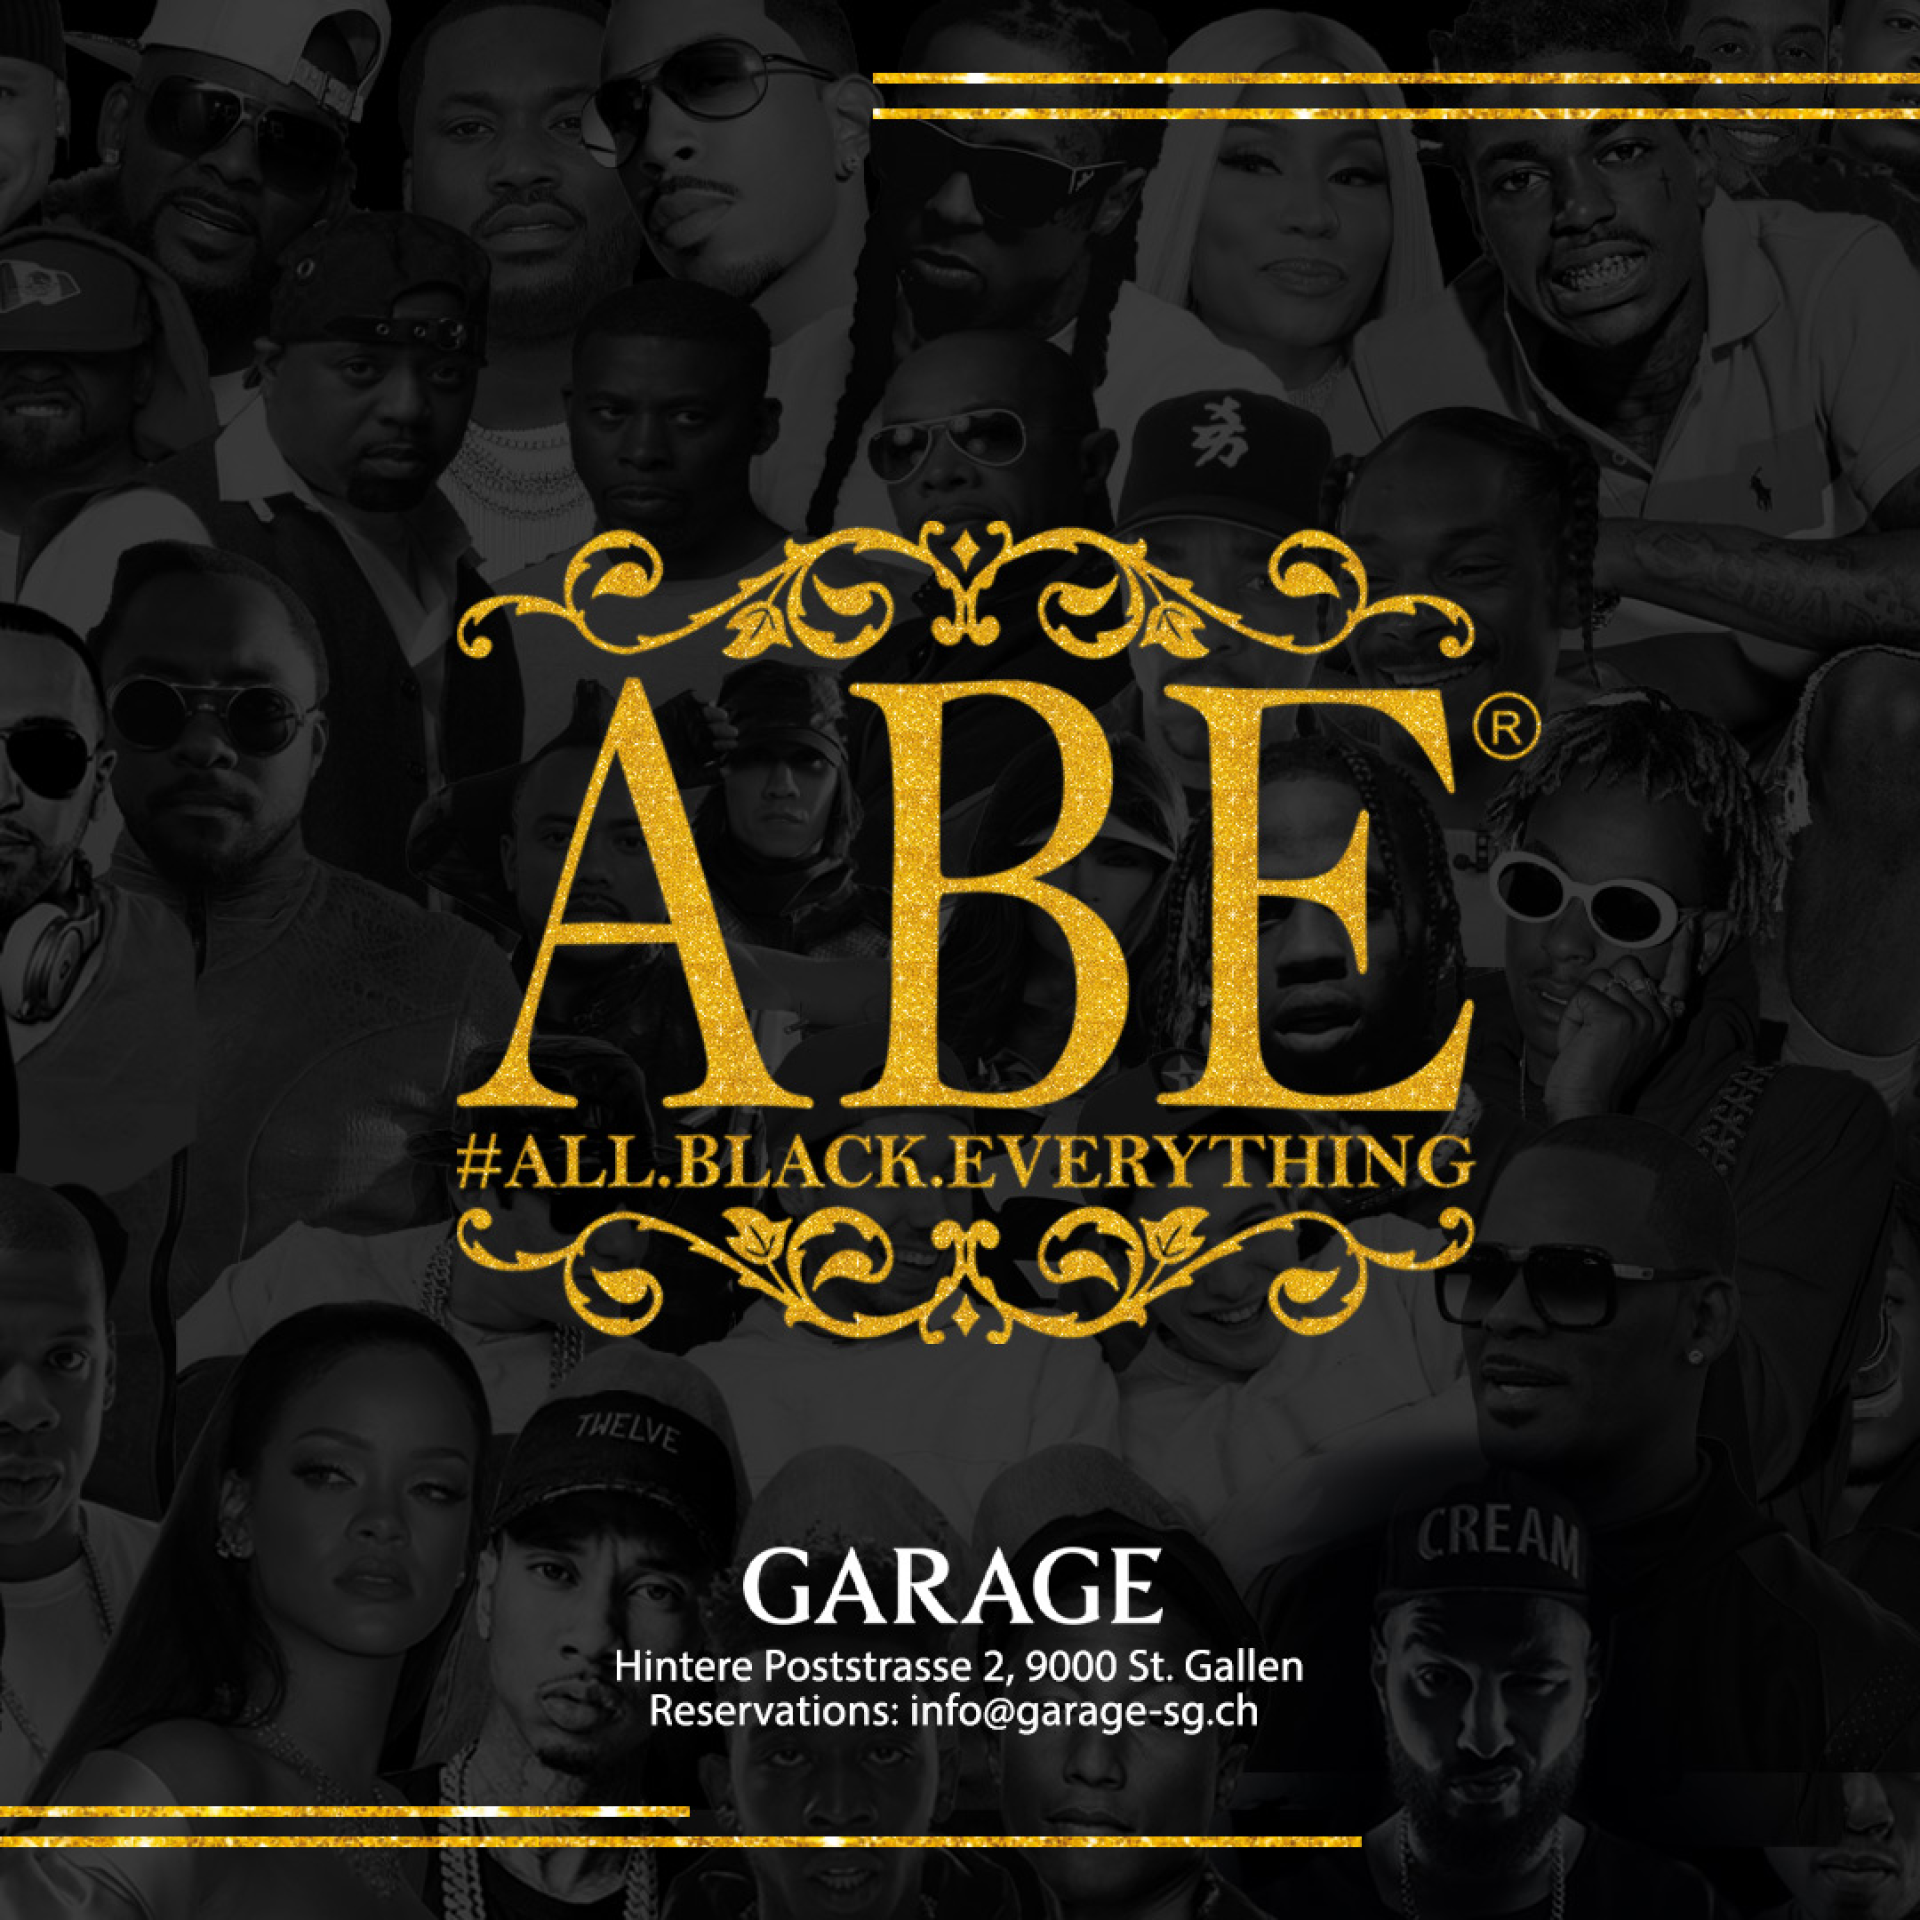 ABE @Garage